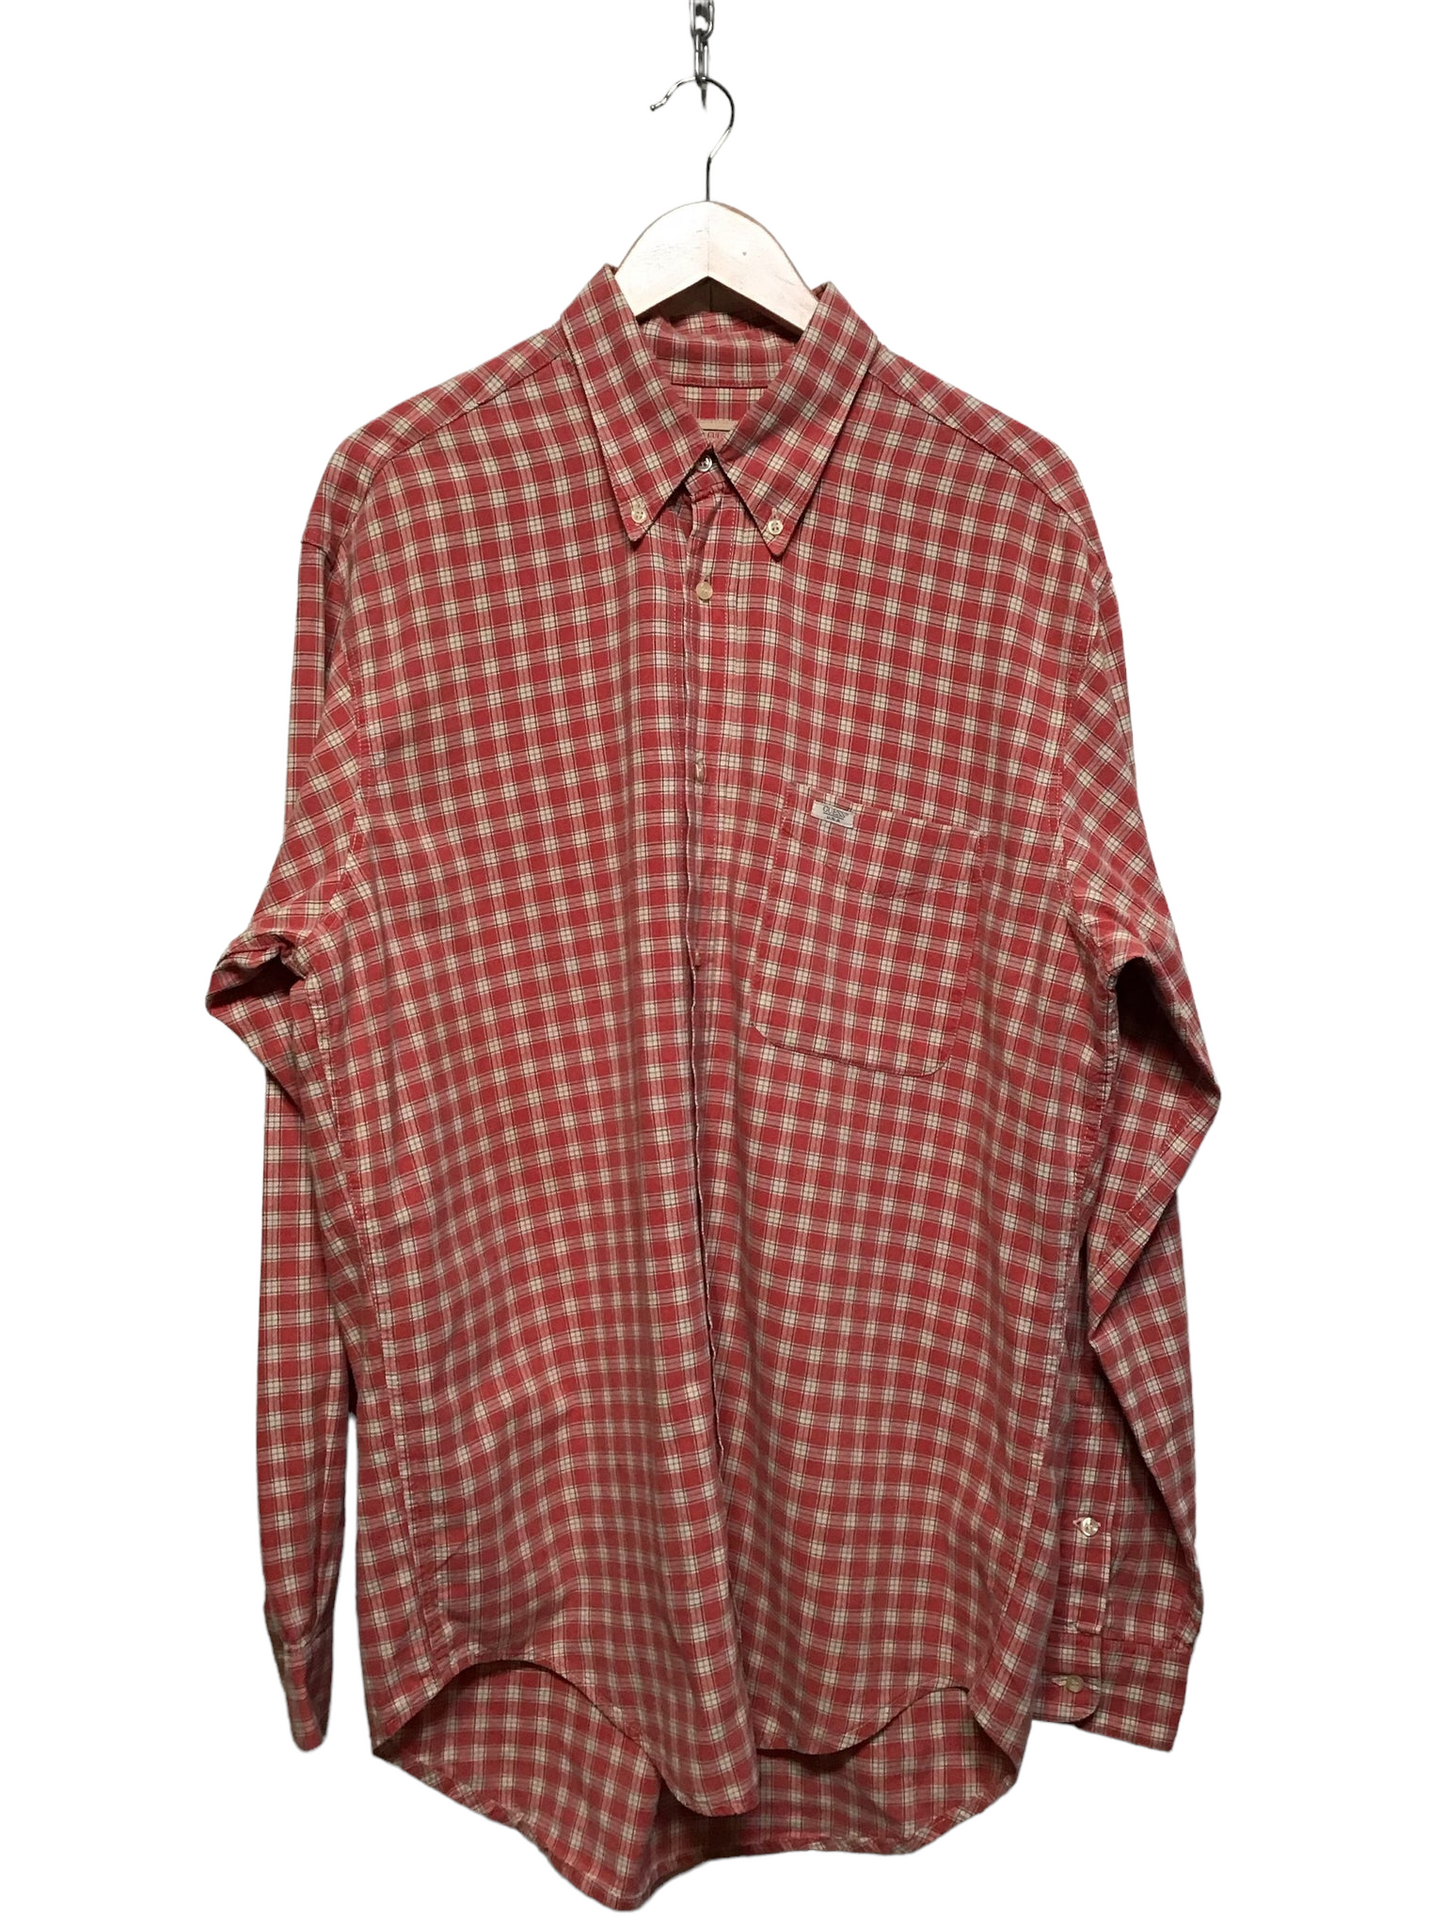 Guess Checkered Shirt (Size XL)